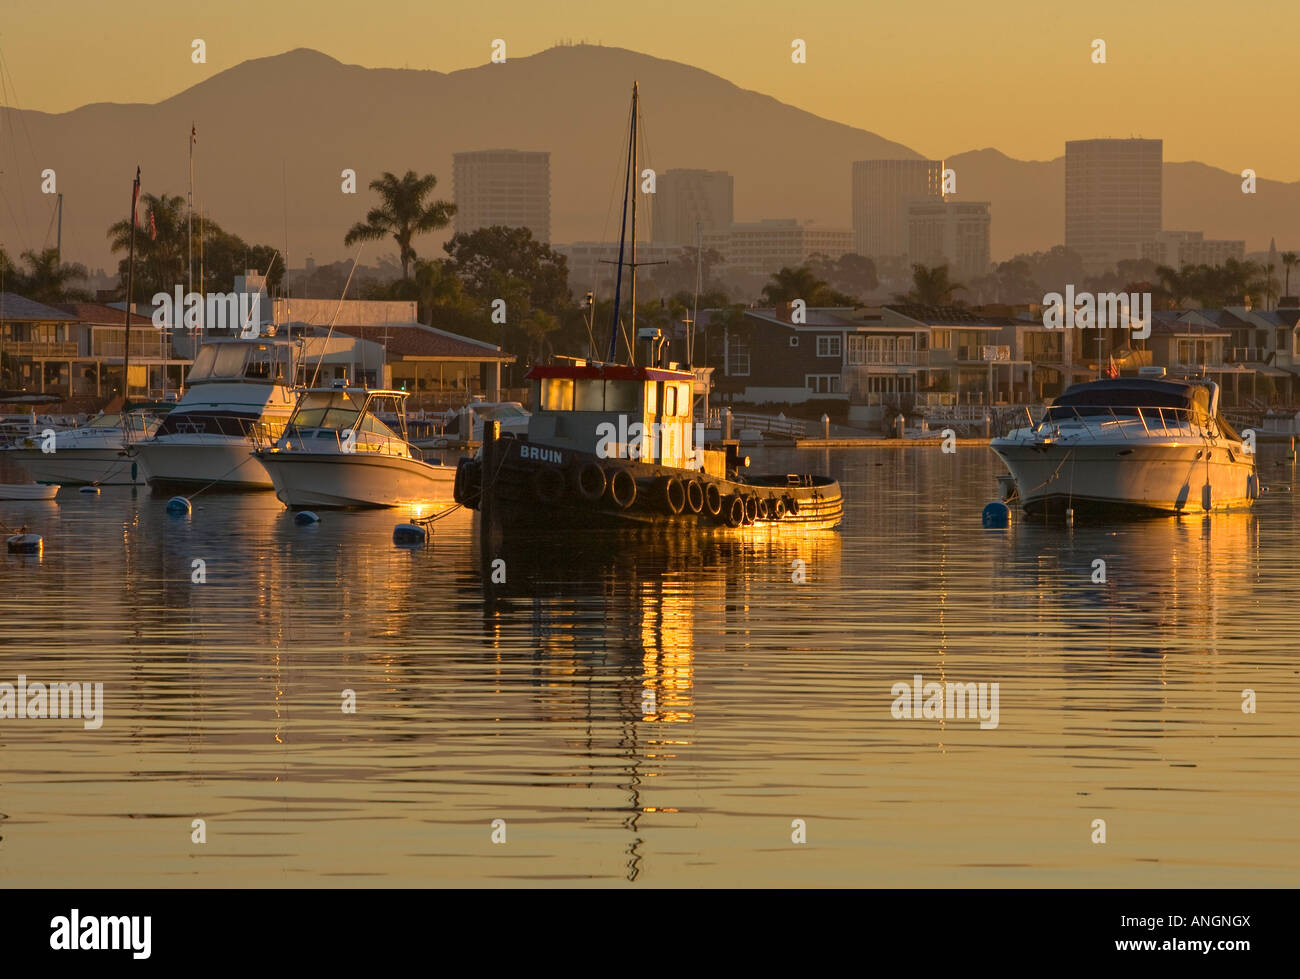 Alte Schlepper im Hafen von Newport Newport Beach, Orange County Kalifornien Vereinigte Staaten Stockfoto